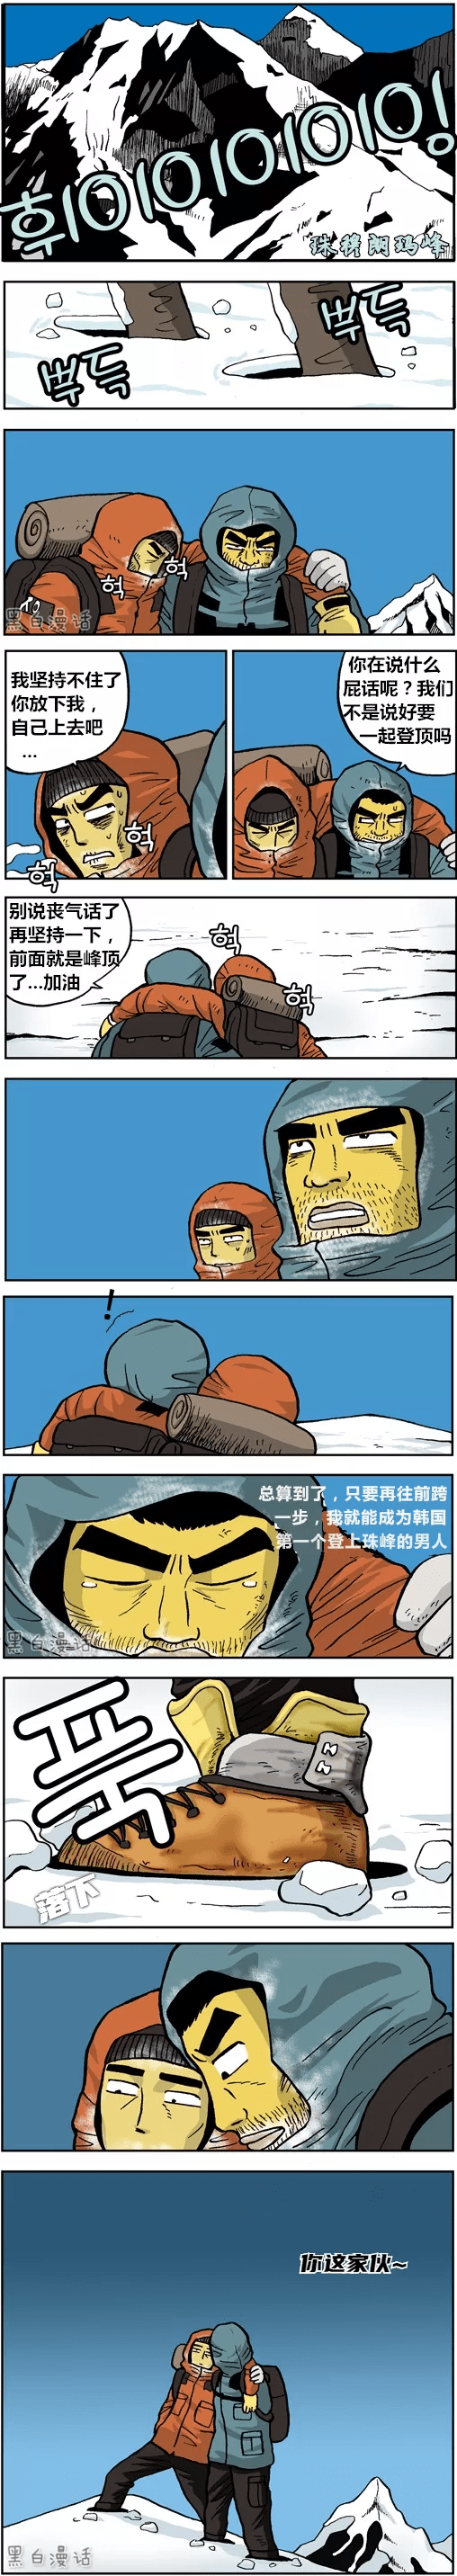 韩国第一个登上珠峰的男人(漫画)_韩国第_珠峰_漫画